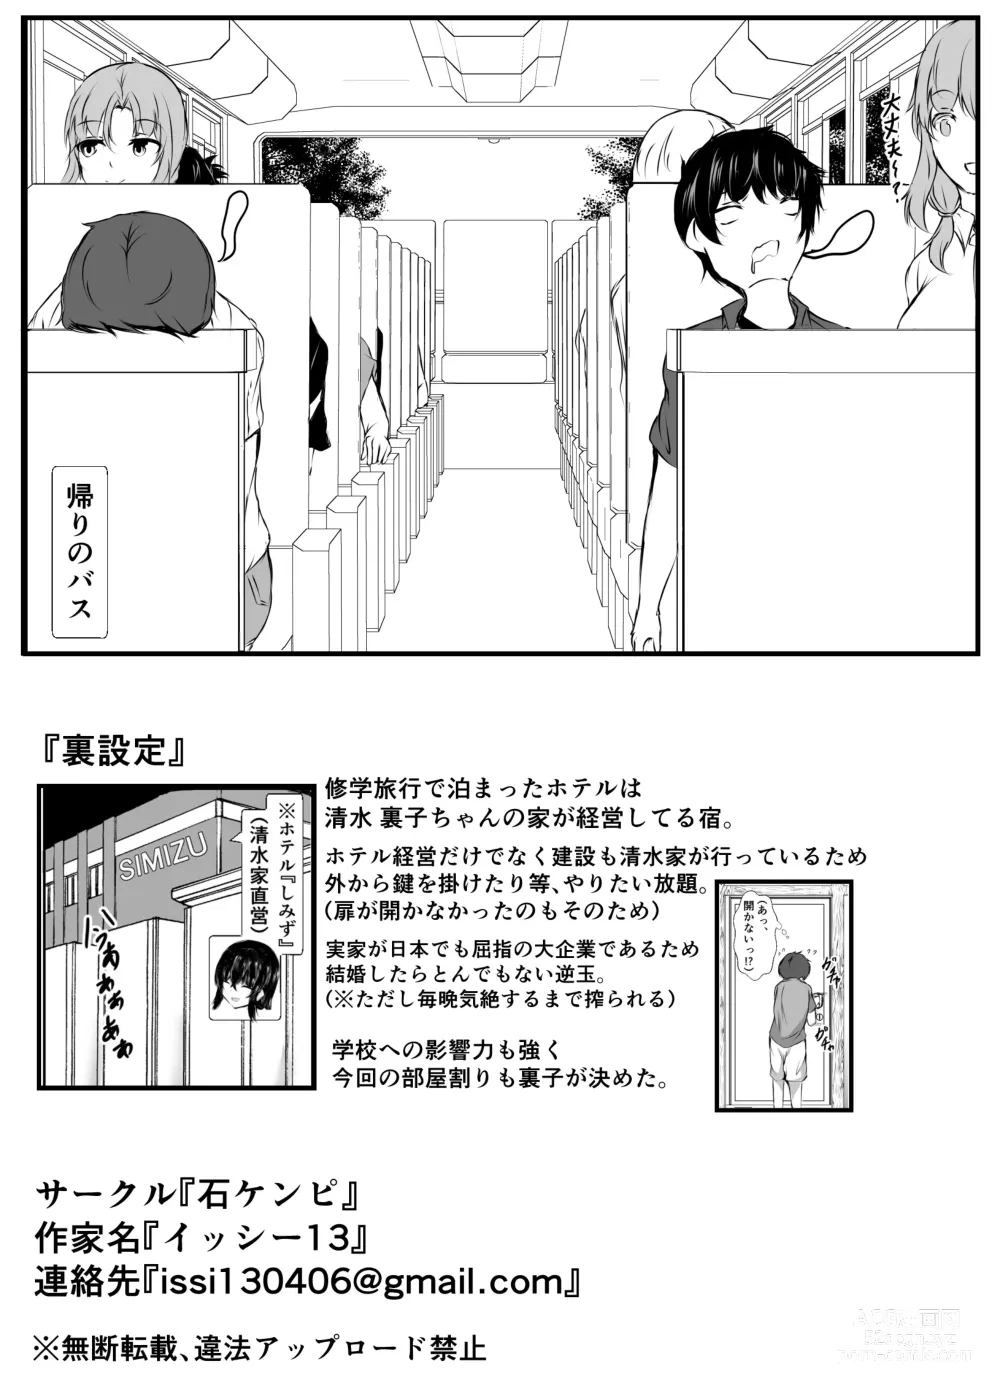 Page 61 of doujinshi kyoudou seikatu 2